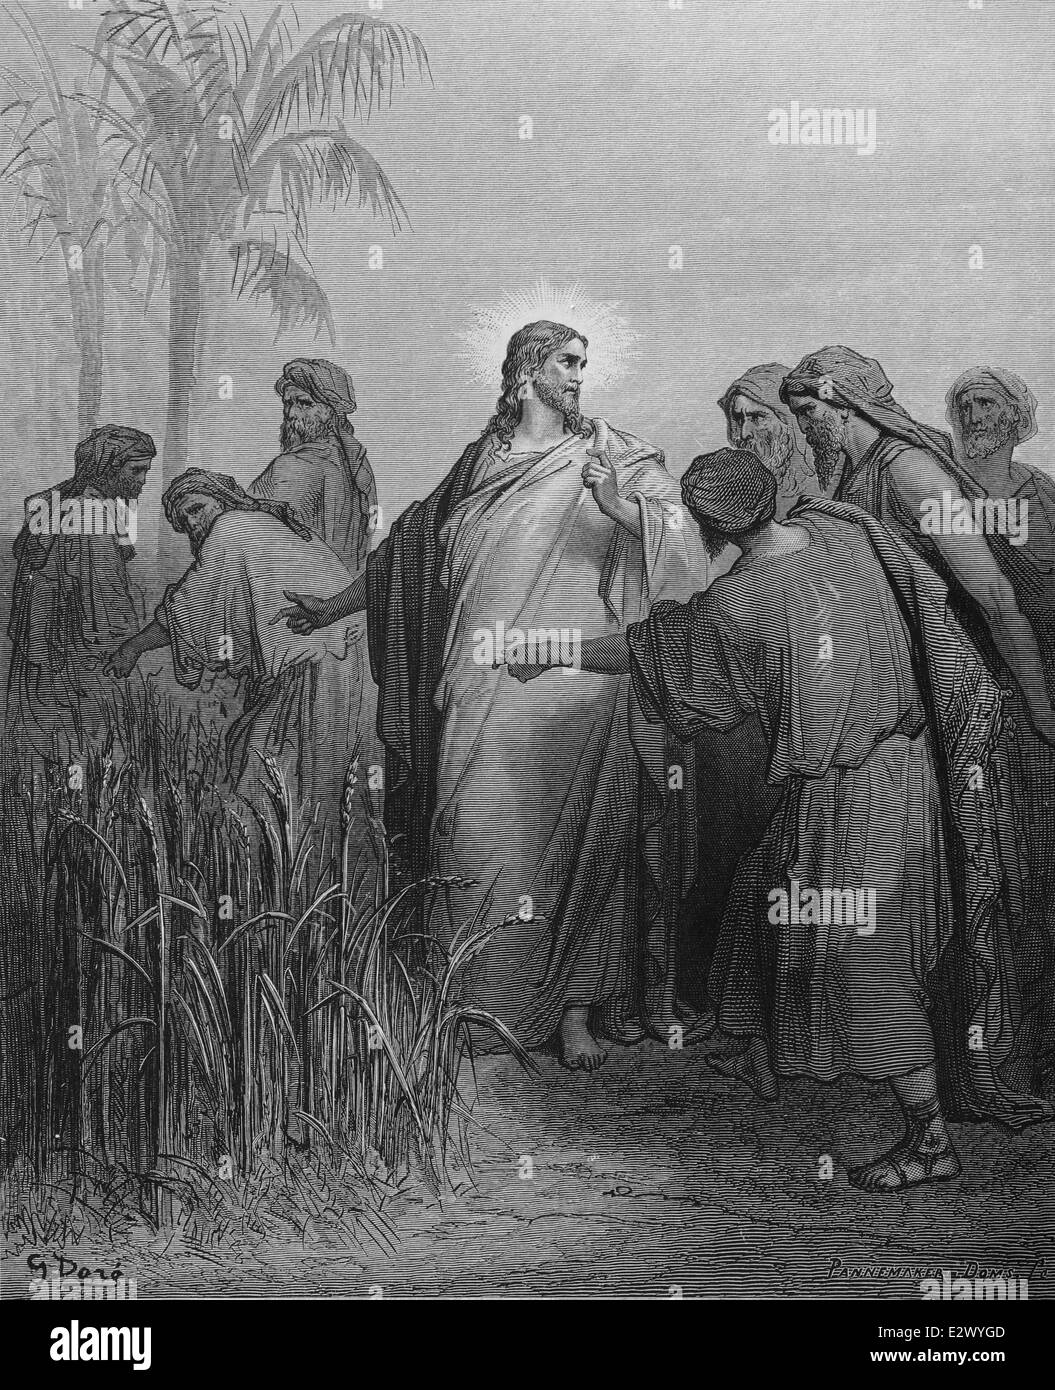 Les Pharisiens défi Jésus sur ce qui permet à ses disciples d'aller chercher le grain sur le SabbathT (Marc, 2:27). Dessin de Gustave Dore. Banque D'Images